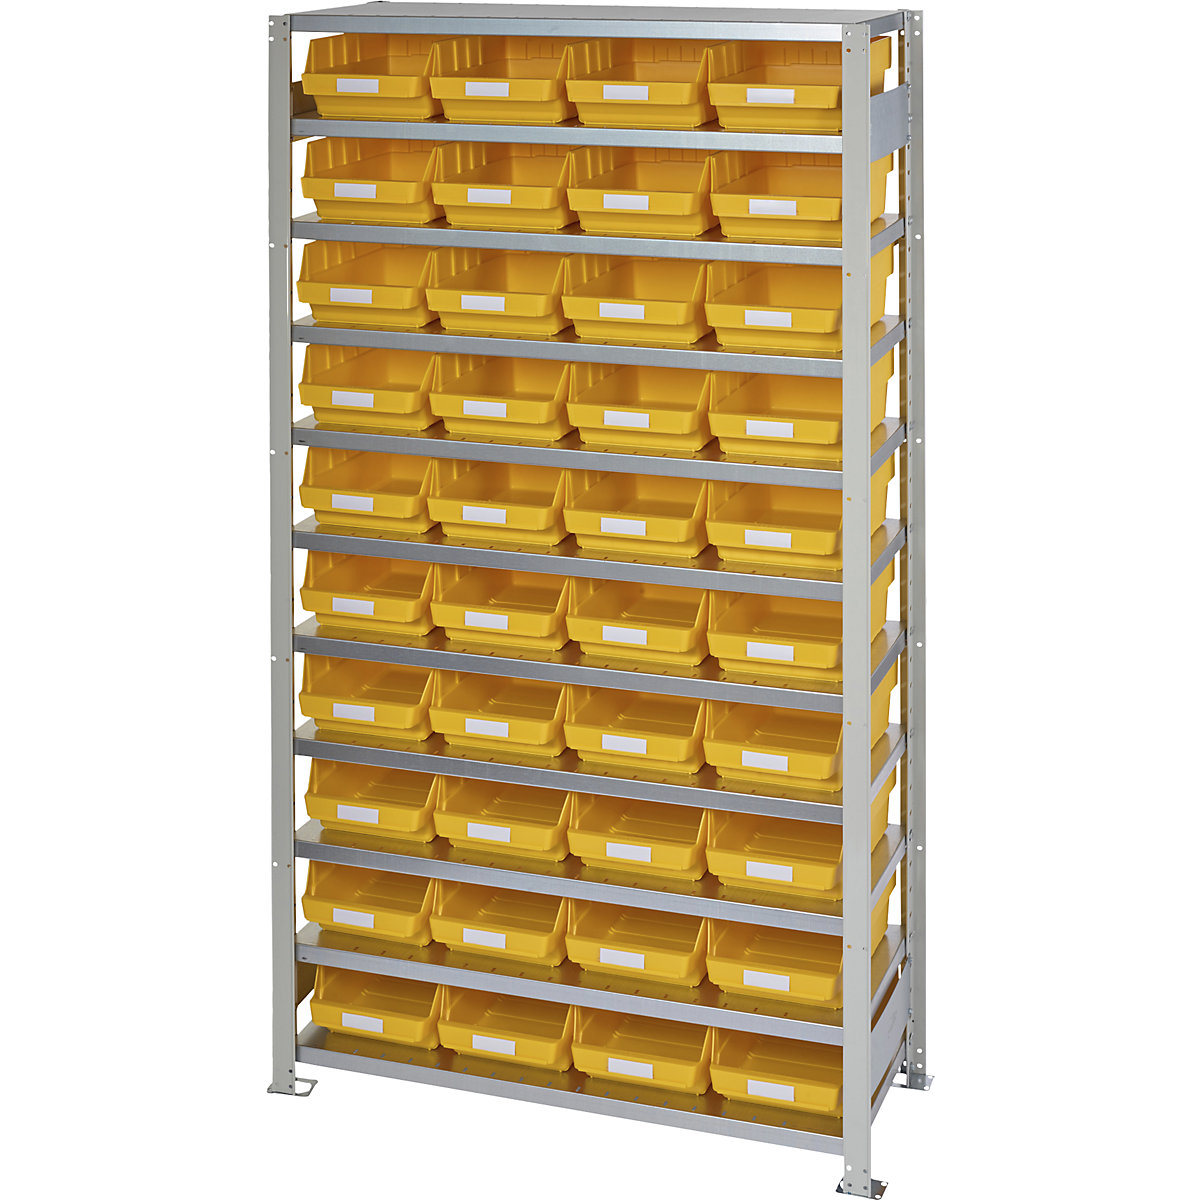 Estante de encaixar com caixas para estante – STEMO, altura da estante 2100 mm, estante básica, profundidade 400 mm, 40 caixas amarelas-9